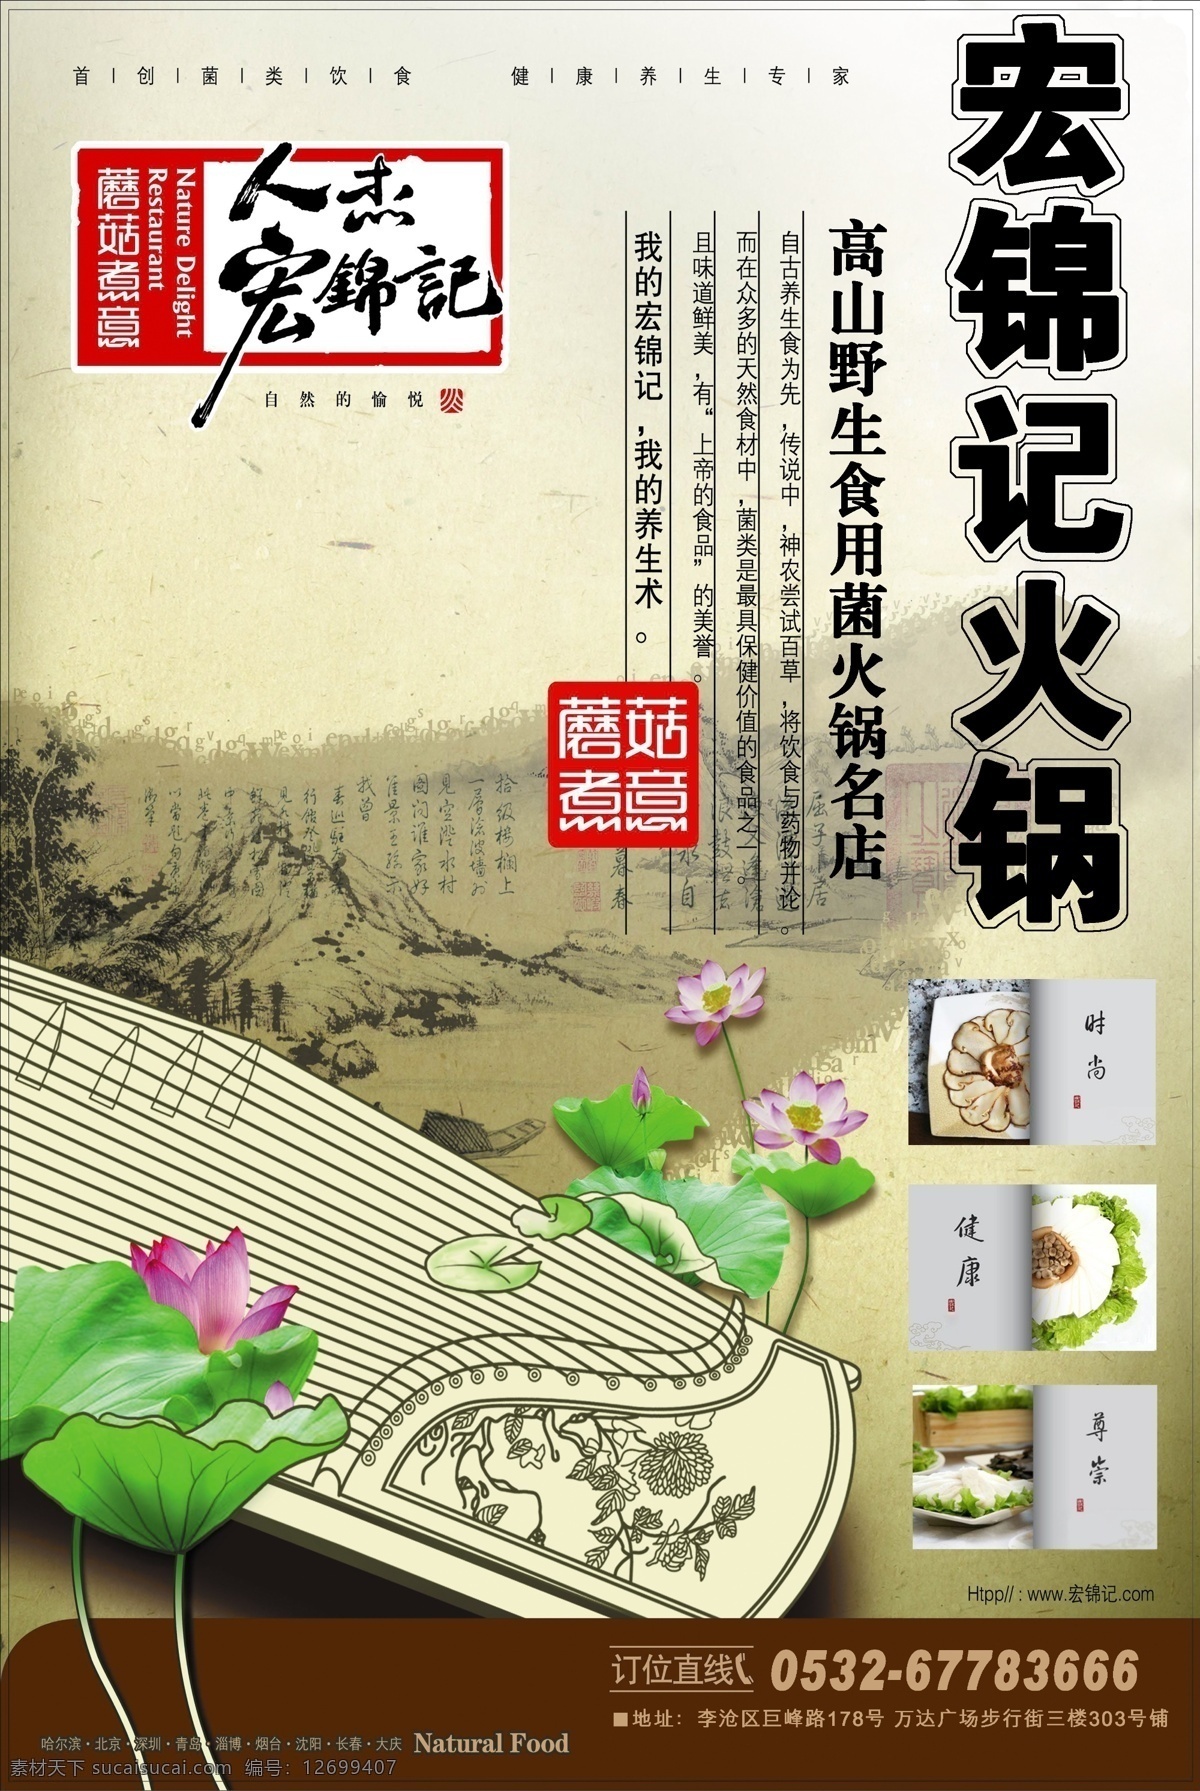 火锅店 促销 海报 食用菌 时尚养生 原创设计 原创海报